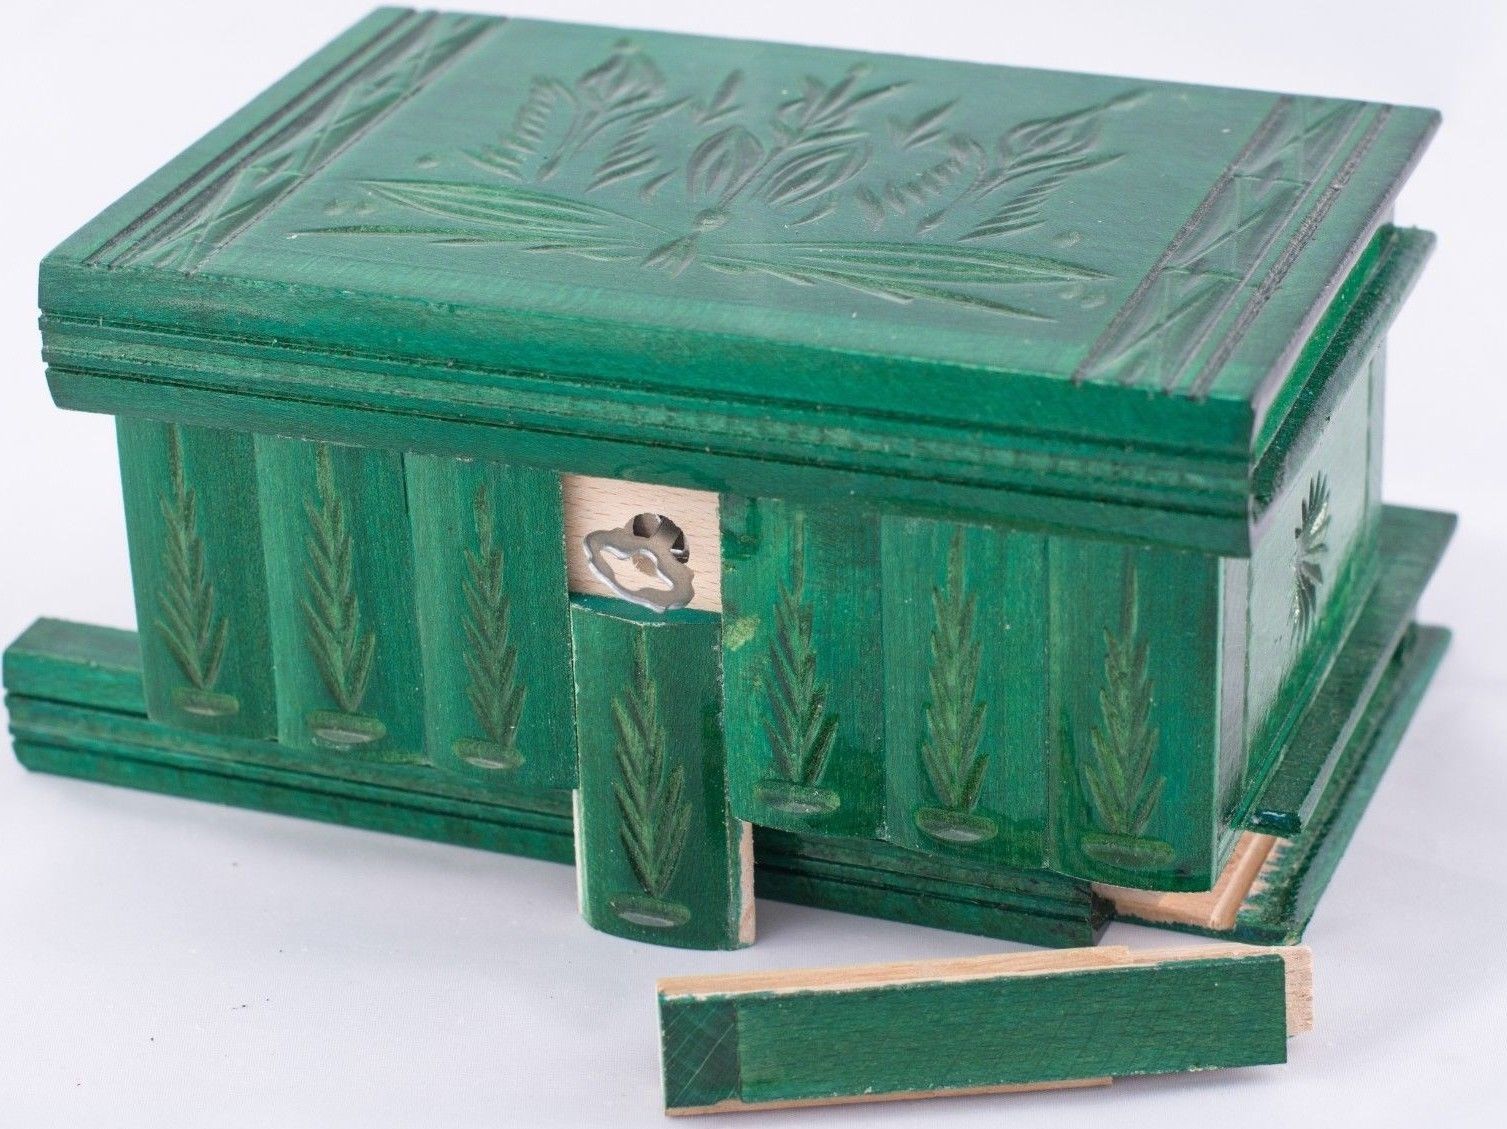 Stash Safe Hidden weed secret wood Rolling Box, grinder grass leaf rizla smoking - $50.49